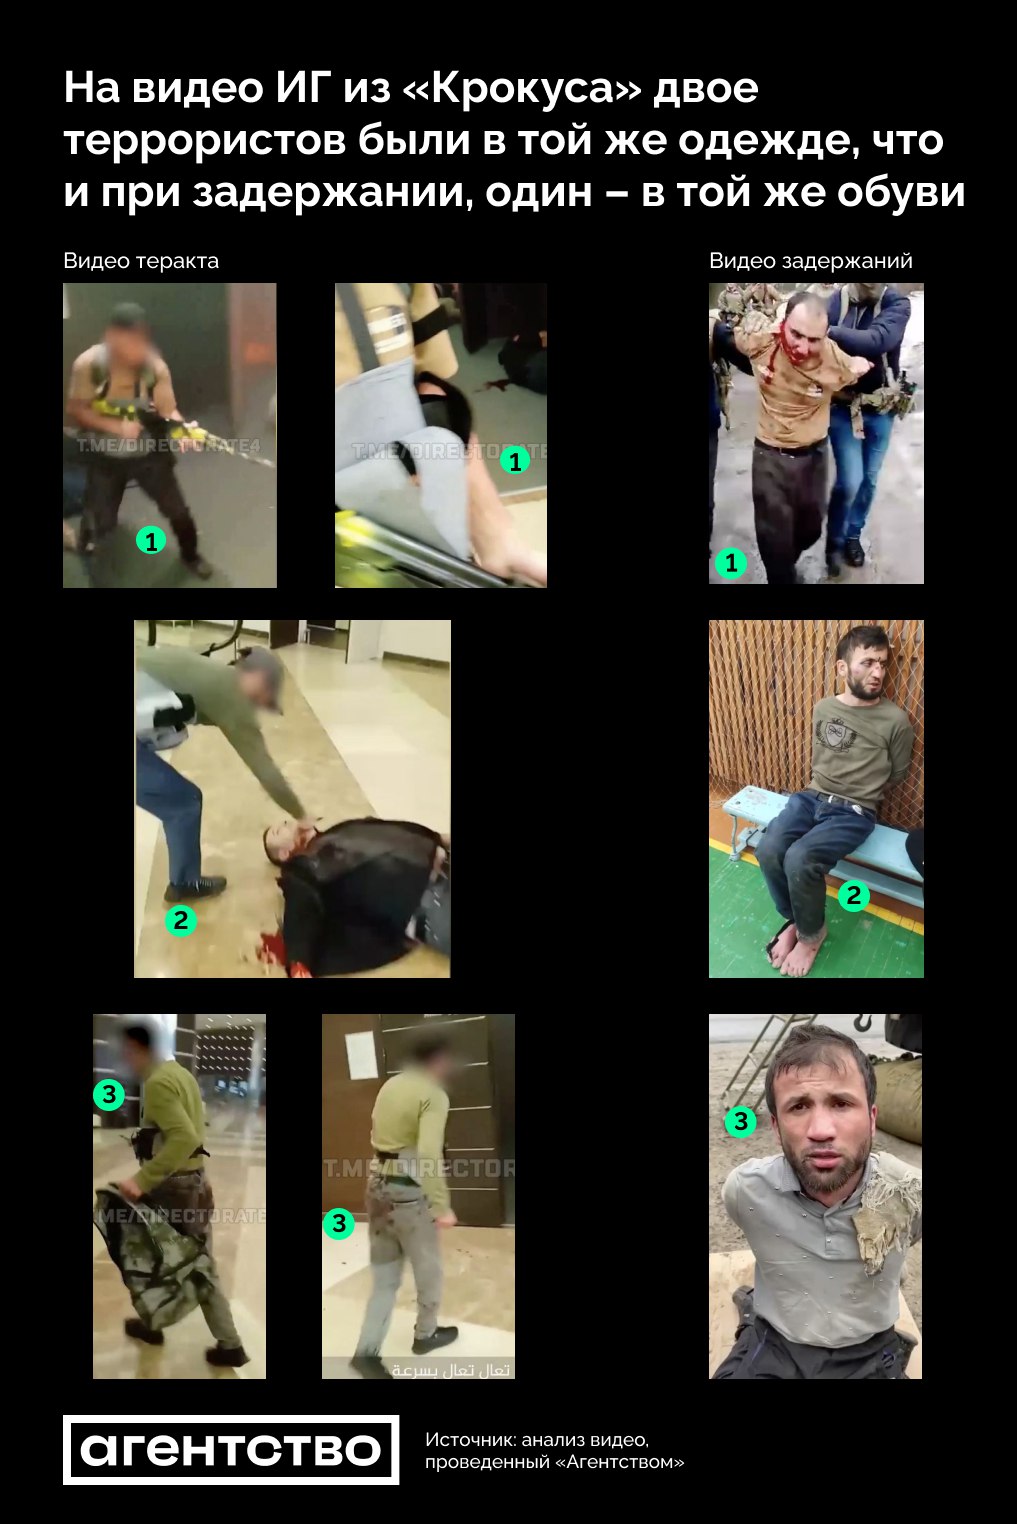 На опублікованому відео ІДІЛ можна побачити схожість в одязі терористів із «Крокуса» та затриманих силовиками